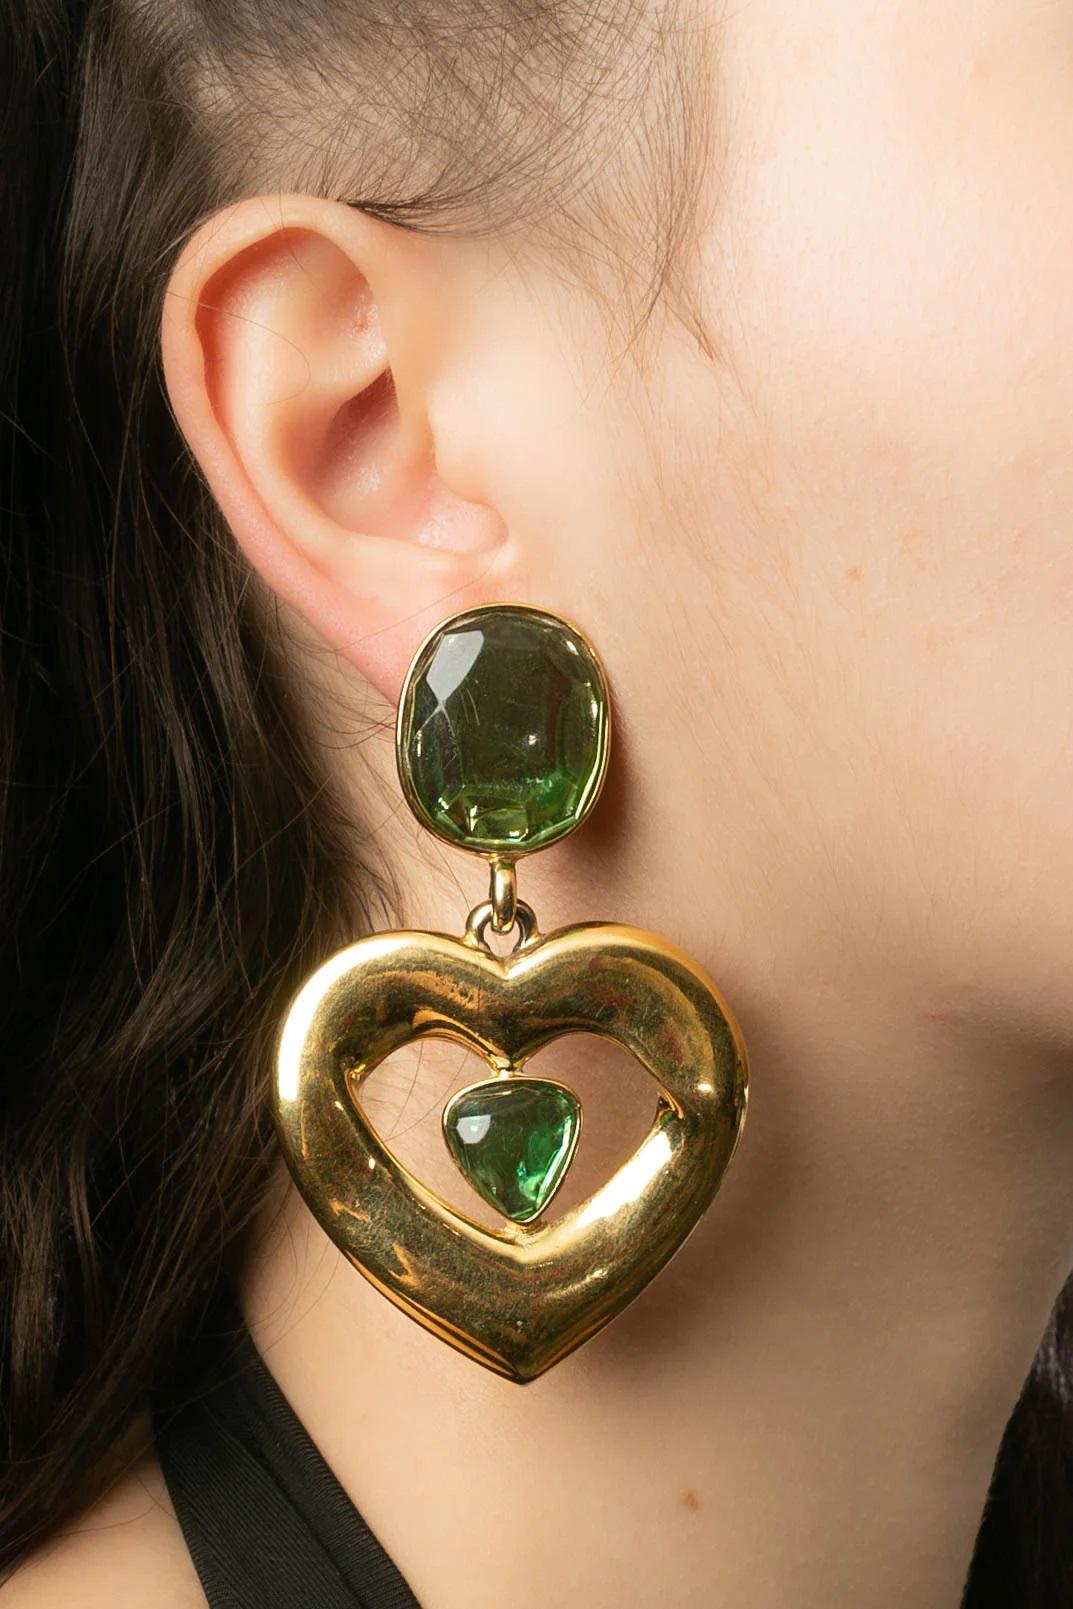 Yves Saint Laurent (Made in France) Ohrringe aus vergoldetem Metall, die ein Herz halten und mit grünen Harz-Cabochons verziert sind.

Zusätzliche Informationen:
Abmessungen: 5 B x 7,7 H cm (1,96